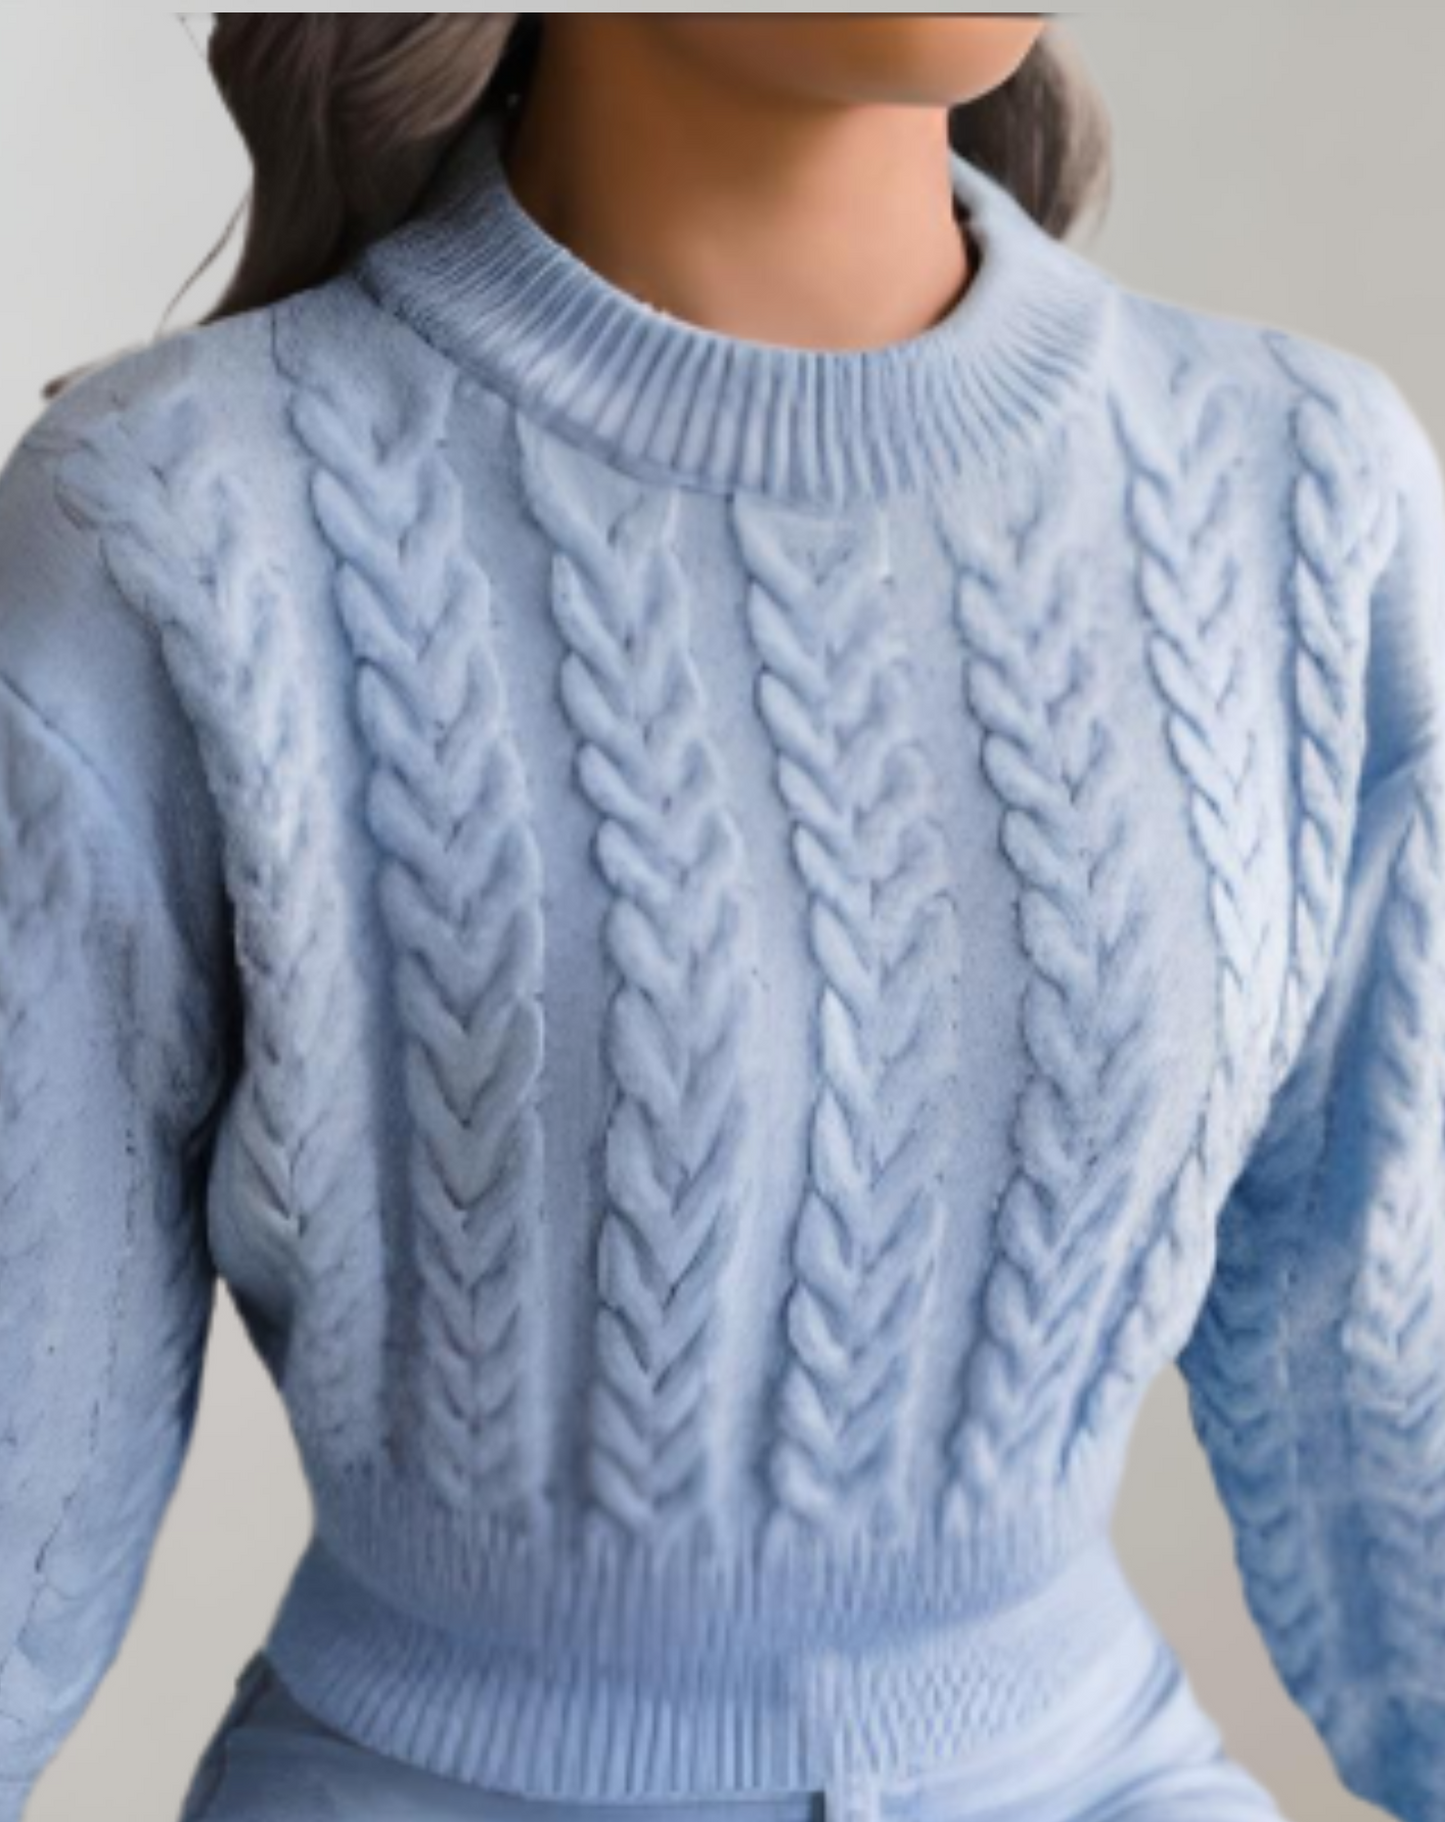 MODISHA - Een cropped trui met een subtiel gedraaid touwpatroon